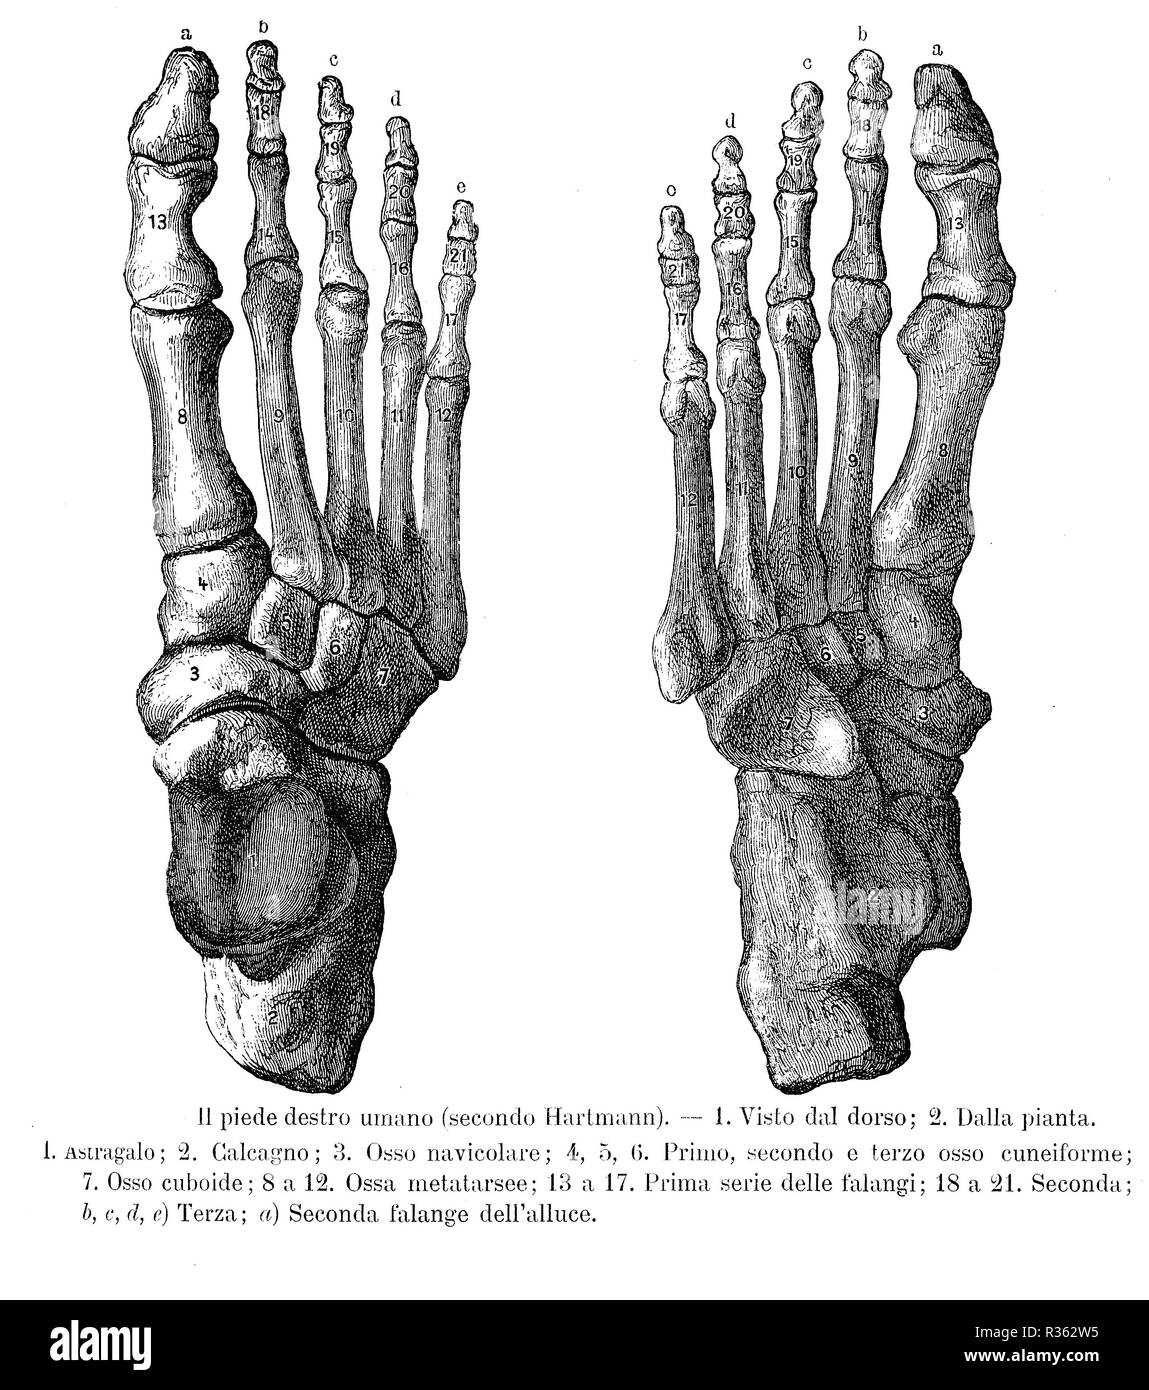 Illustrazione vintage di anatomia, il piede destro ossa, dorsalis e suola vista con italiano descrizioni anatomiche Foto Stock